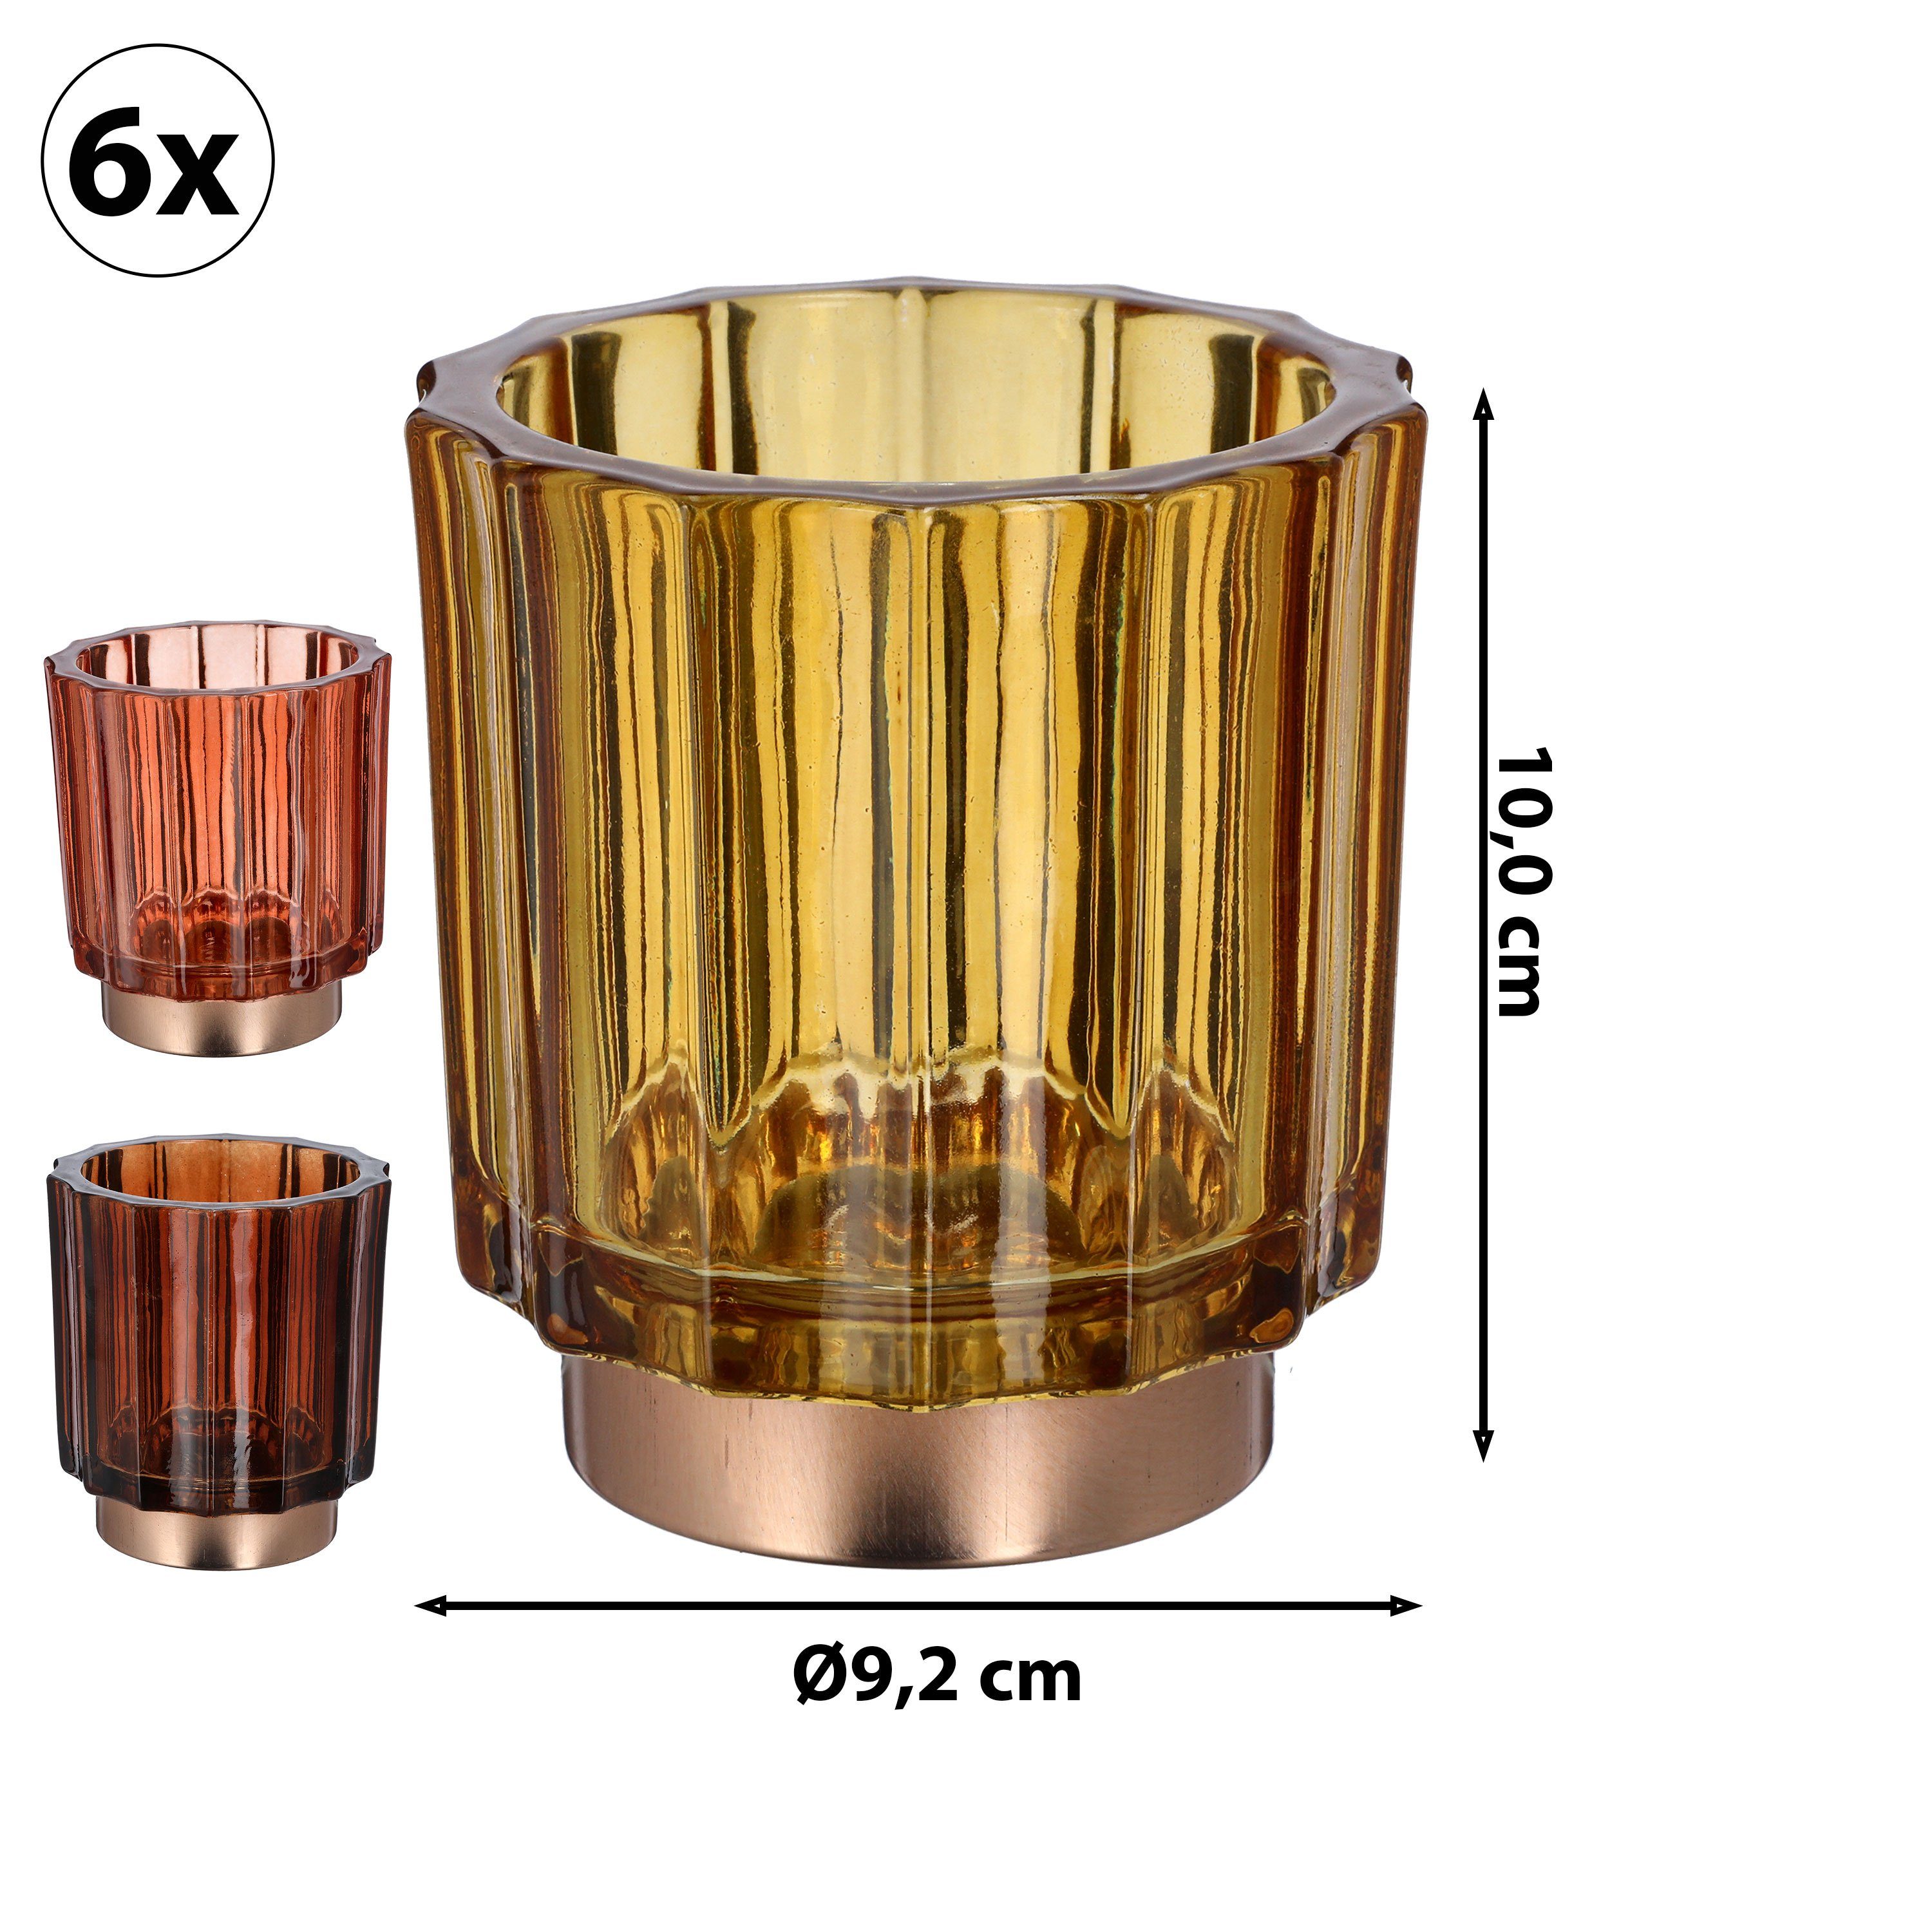 CEPEWA Teelichthalter Windlicht 3er Set 9,2x10cm 3 Farben Glas Sockel